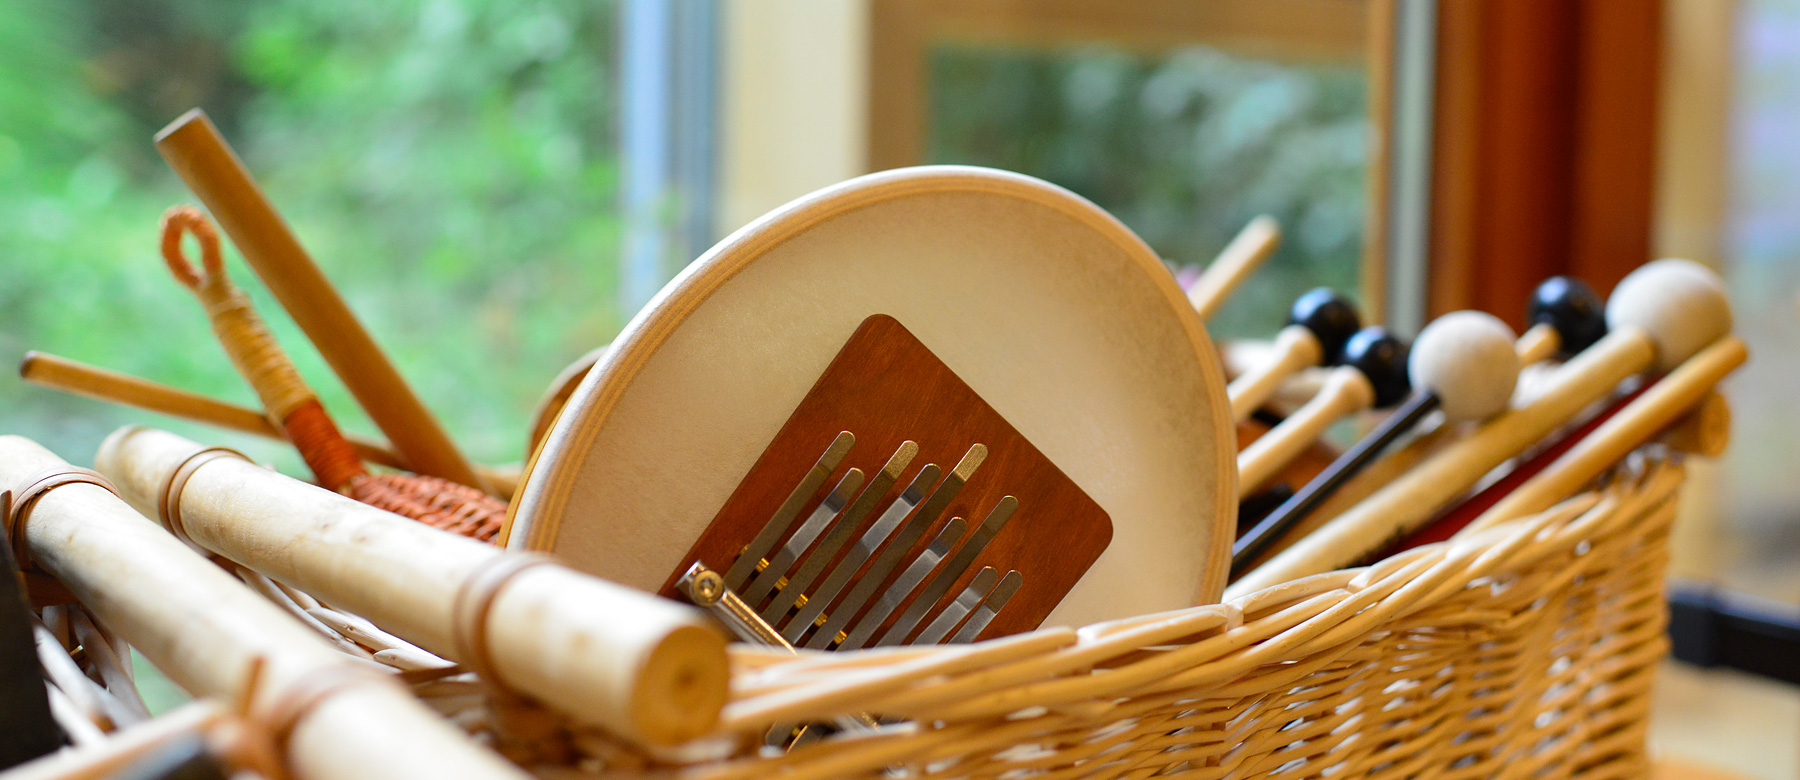 Musikinstrumente aus der Musiktherapie liegen in einem Korb.